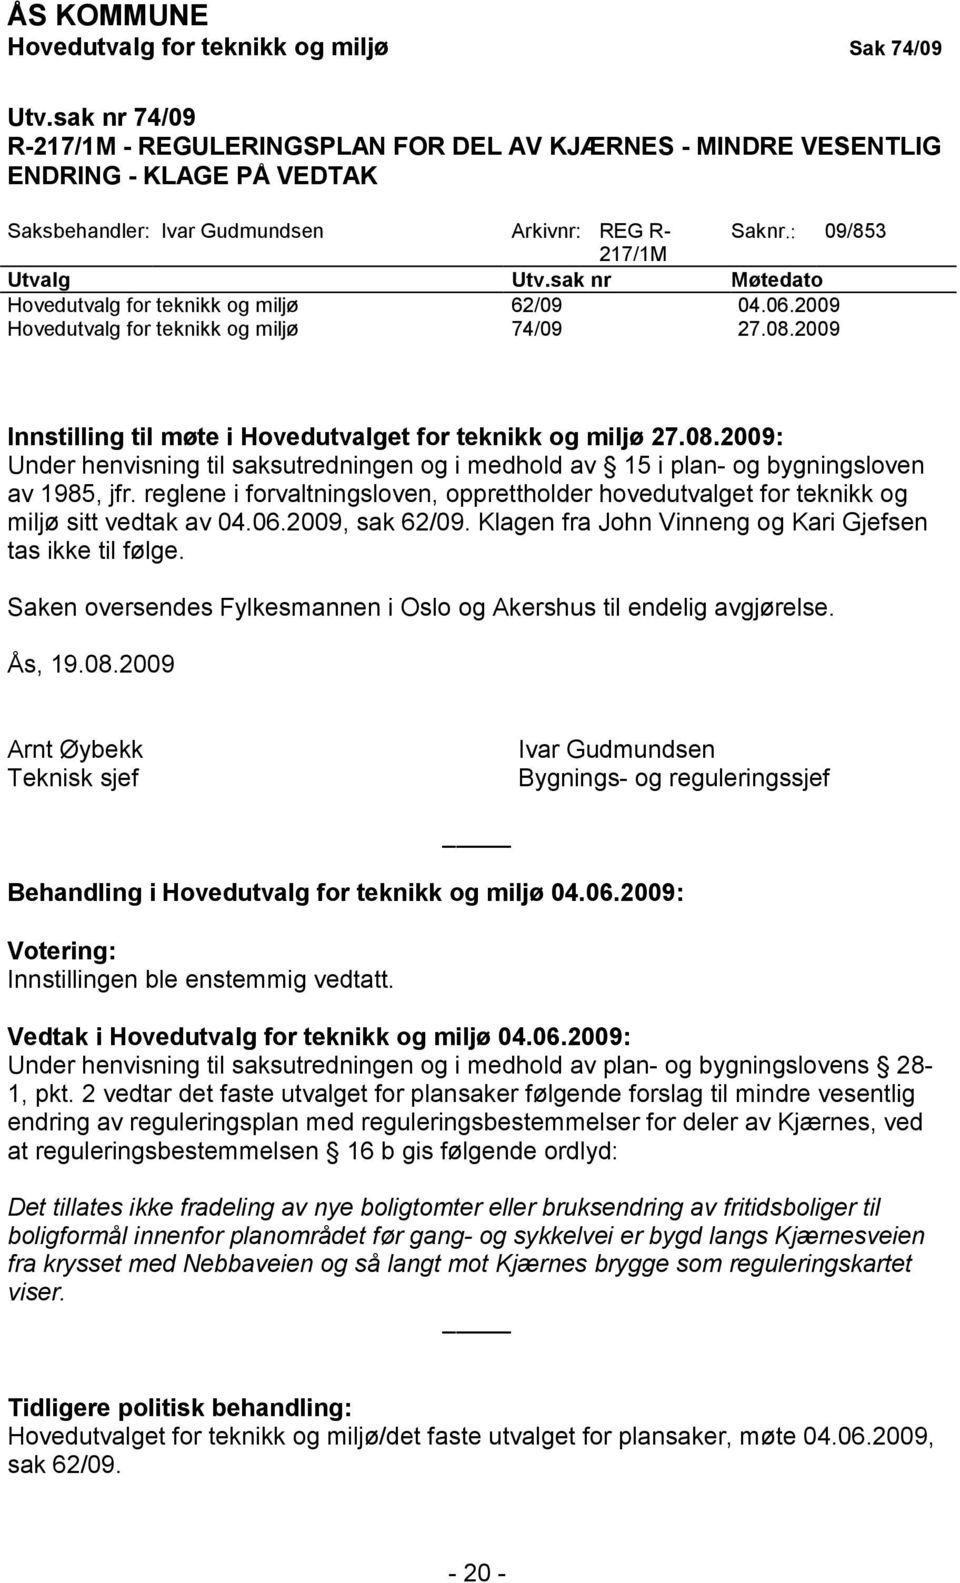 sak nr Møtedato Hovedutvalg for teknikk og miljø 62/09 04.06.2009 Hovedutvalg for teknikk og miljø 74/09 27.08.